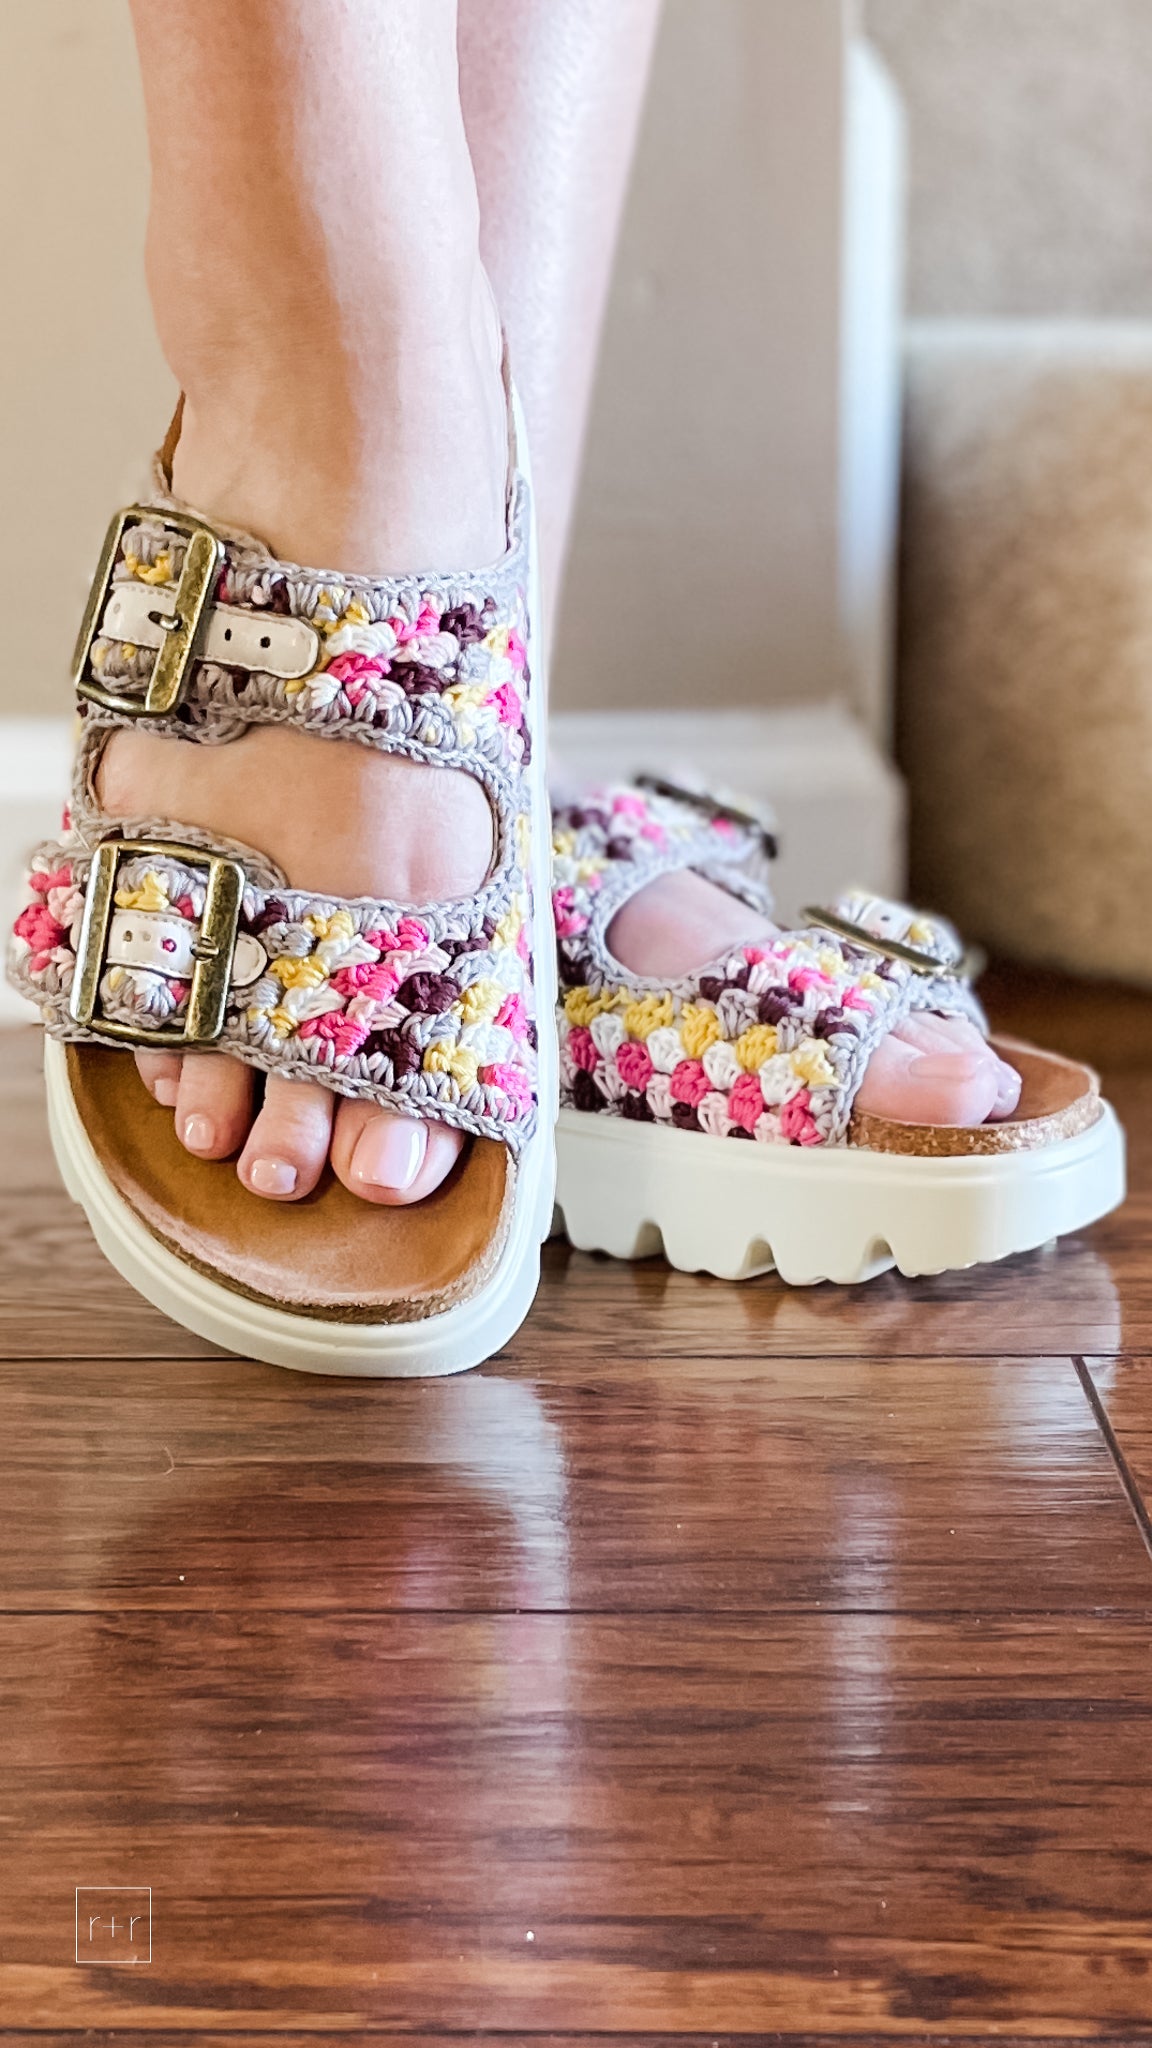 corkys rumor has it platform sandals in pink multi color macrame